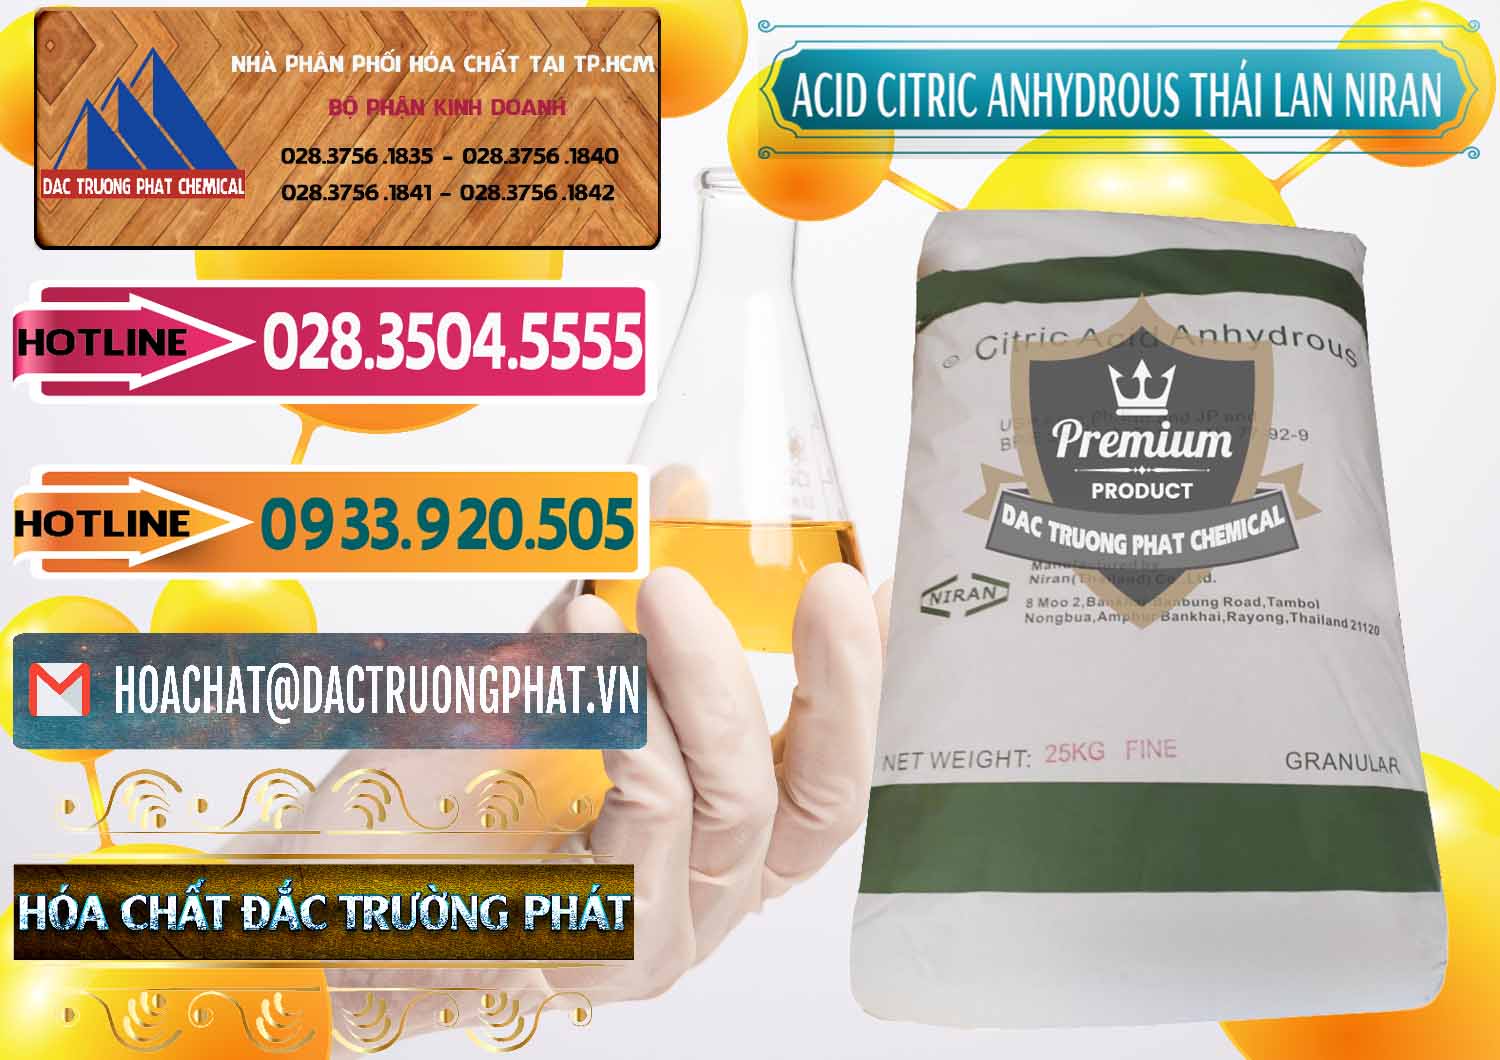 Đơn vị bán & cung ứng Acid Citric - Axit Citric Anhydrous - Thái Lan Niran - 0231 - Cty bán _ cung cấp hóa chất tại TP.HCM - dactruongphat.vn